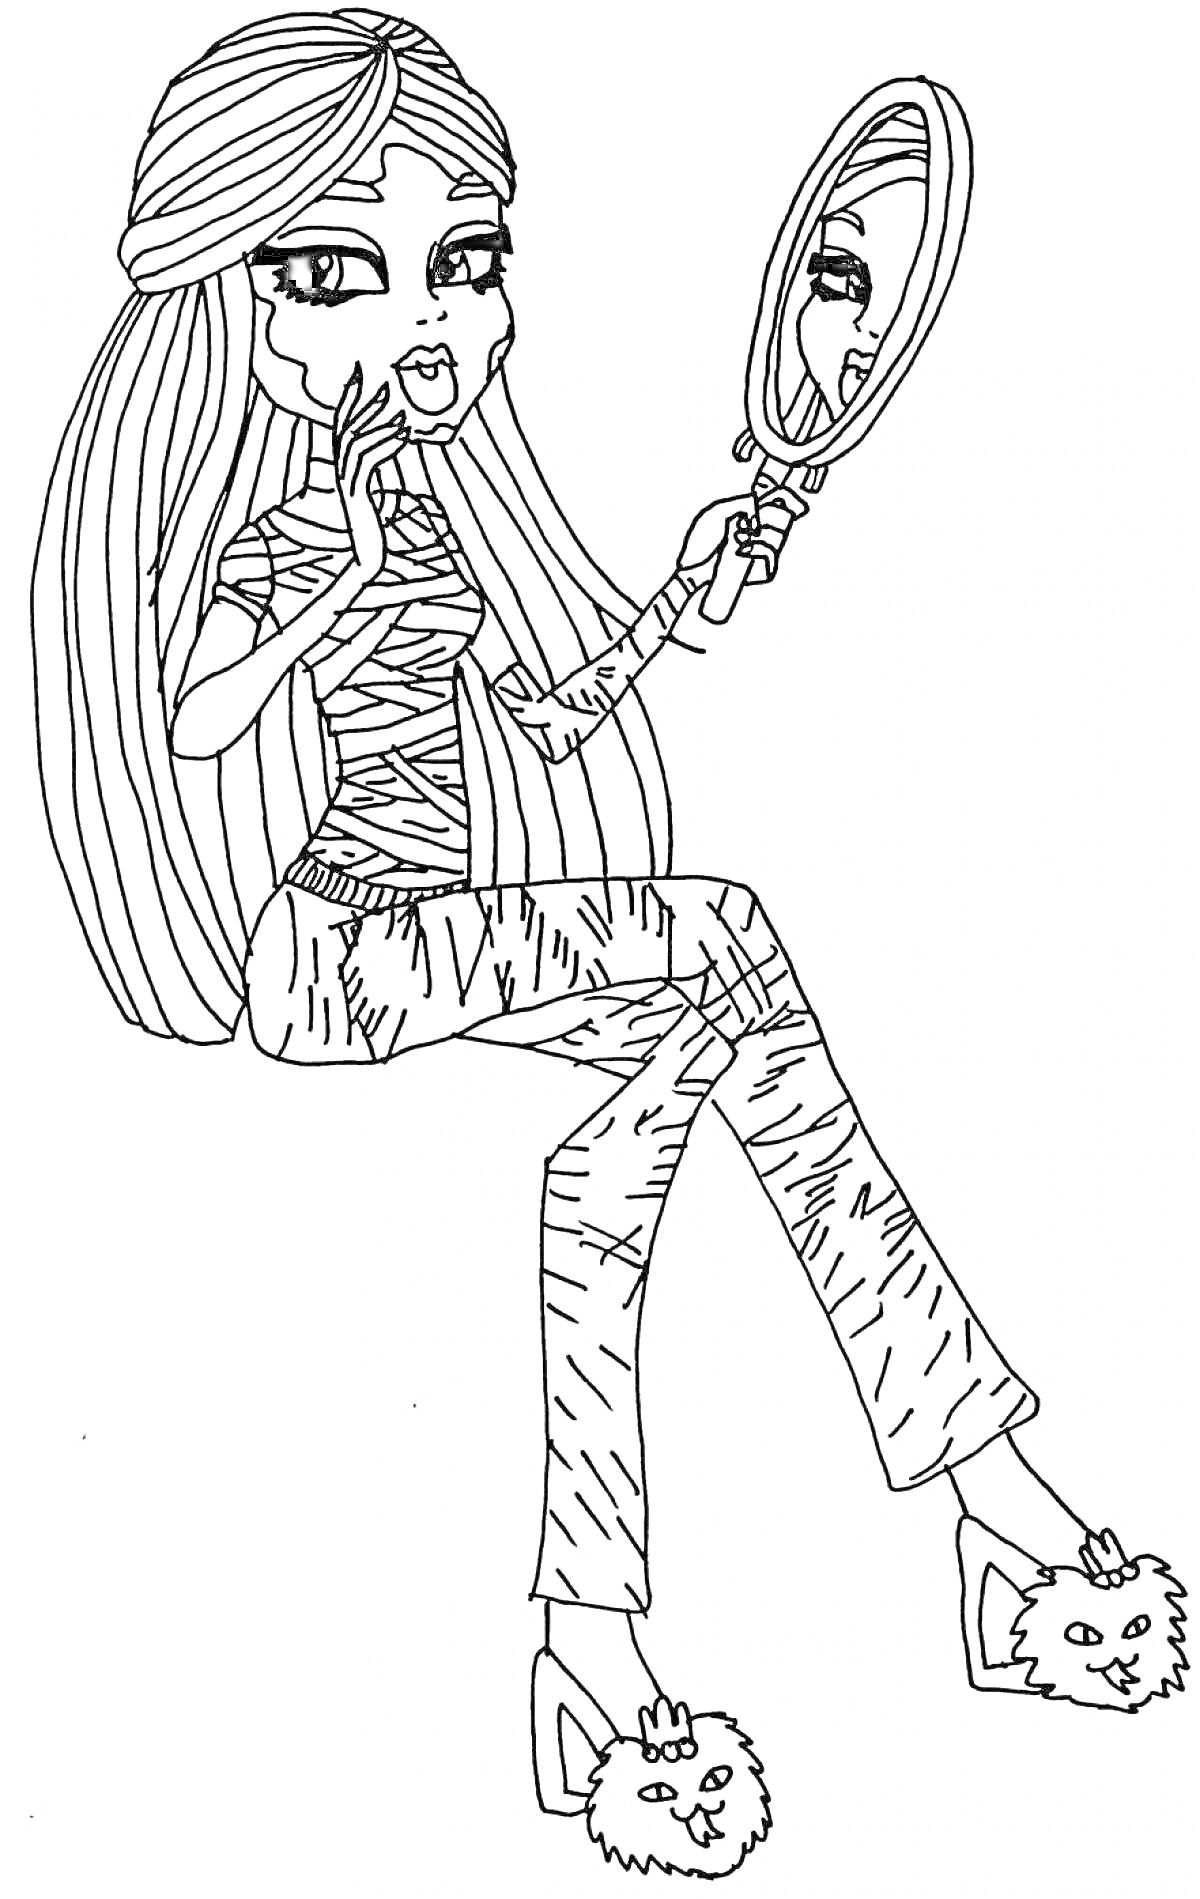 Раскраска Мумифицированная девушка из Монстр Хай с длинными волосами, держащая зеркало в одной руке и сидящая, обутая в тапочки с мордочками зверей